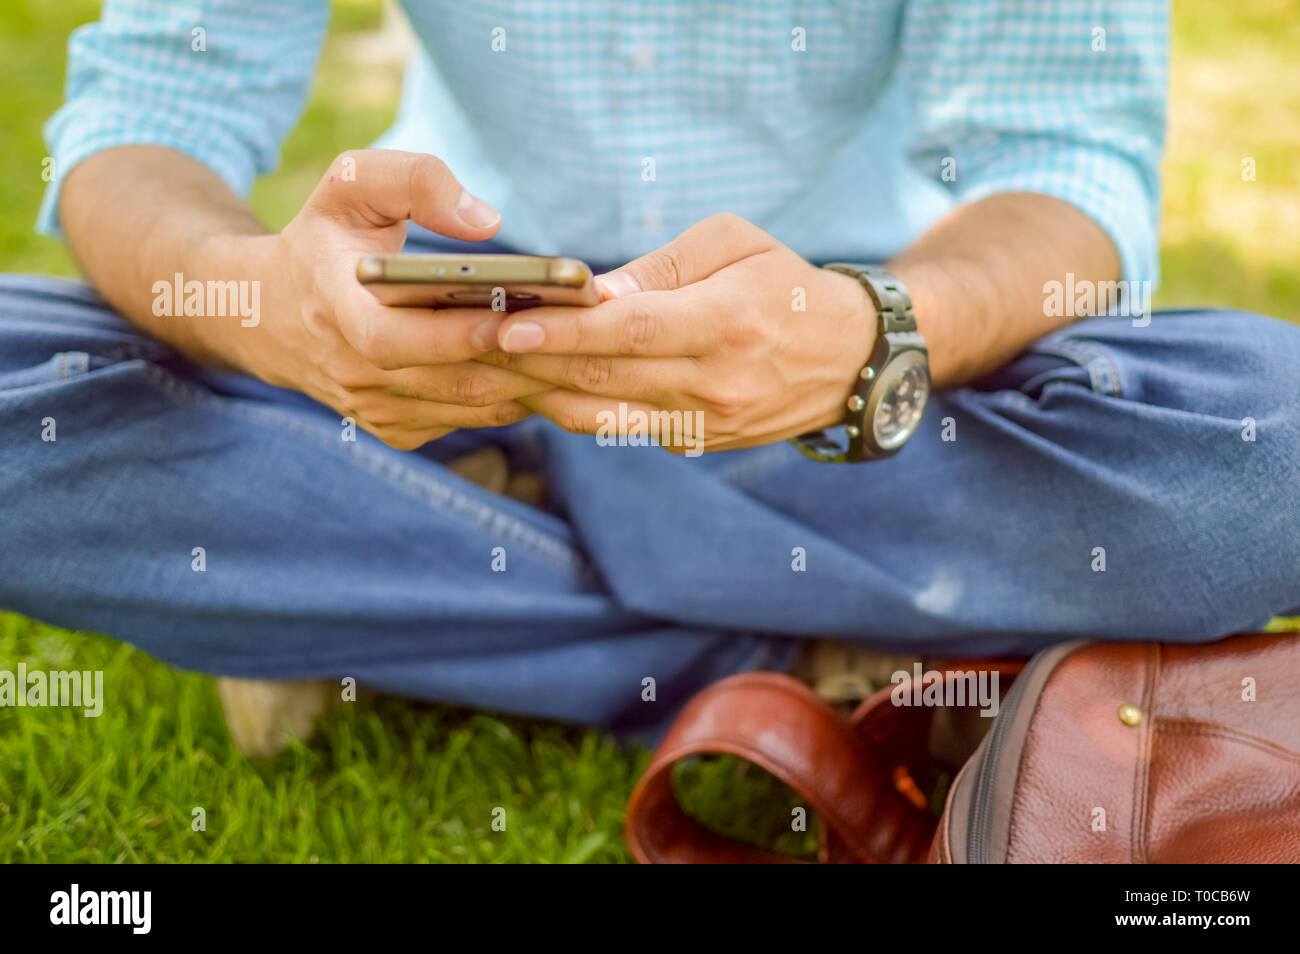 Eine Person mit seinem Handy und dabei einige Arbeit in einer Wiese oder Garten. Stockfoto